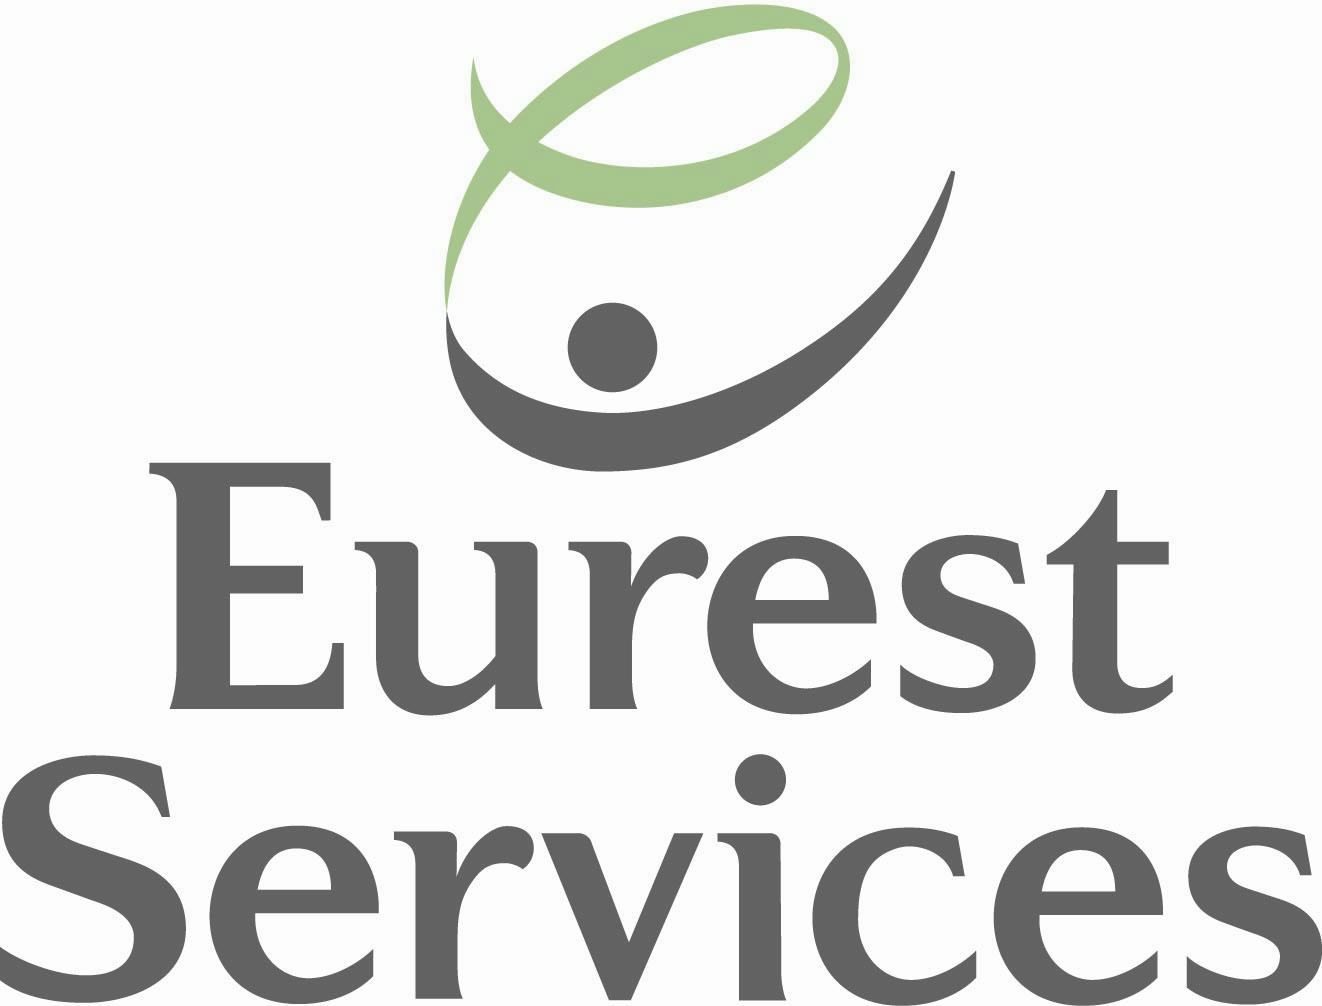 Eurest Services wint aanbesteding bij nieuwe locatie AkzoNobel